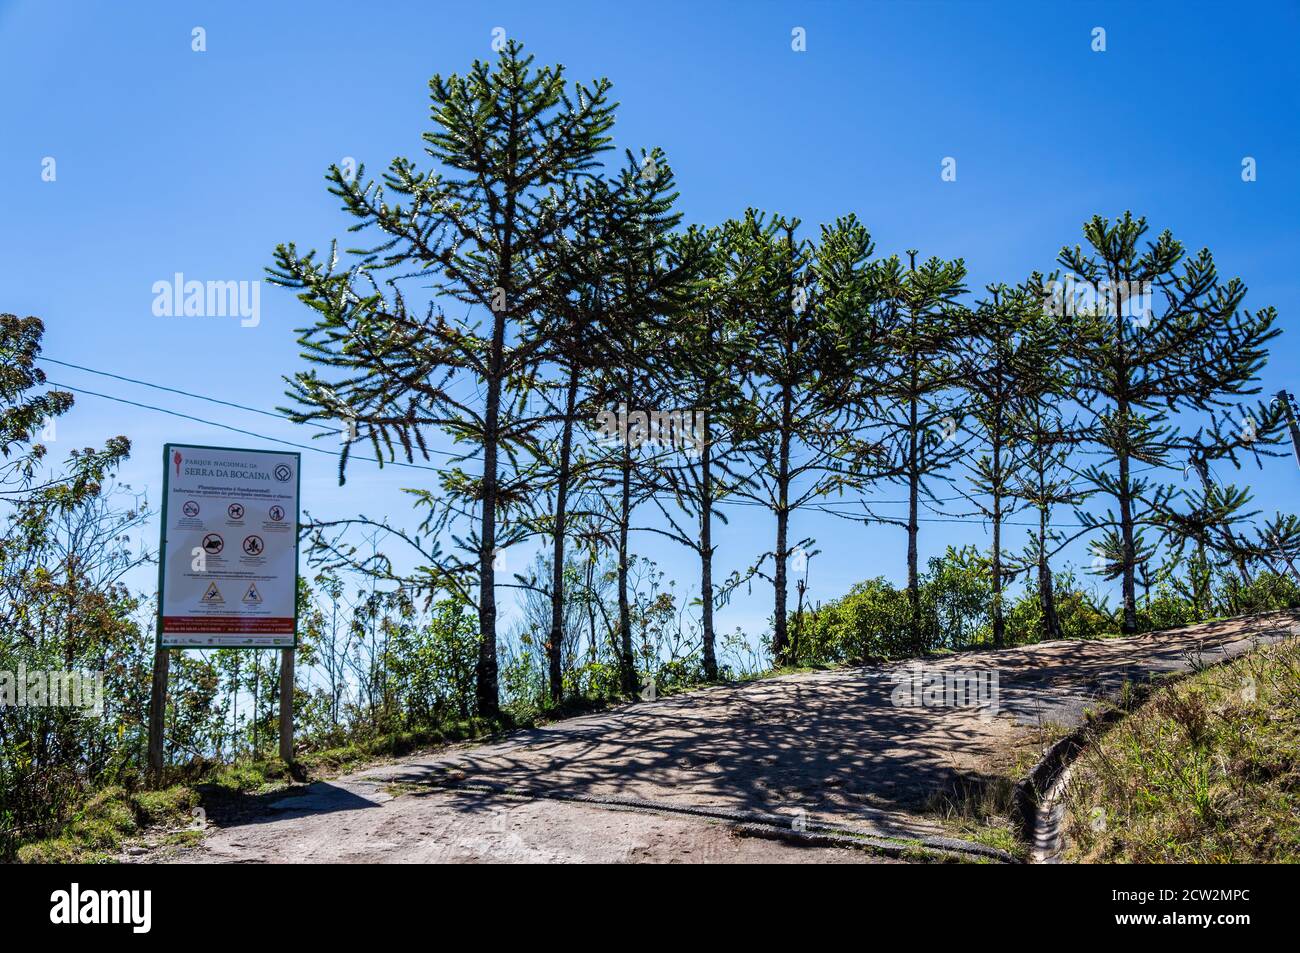 Affiancato da alberi in curva a destra, in prossimità della fine del sentiero escursionistico che conduce a Pedra da Macela, osservando lo sport nel parco nazionale della Serra da Bocaina. Foto Stock